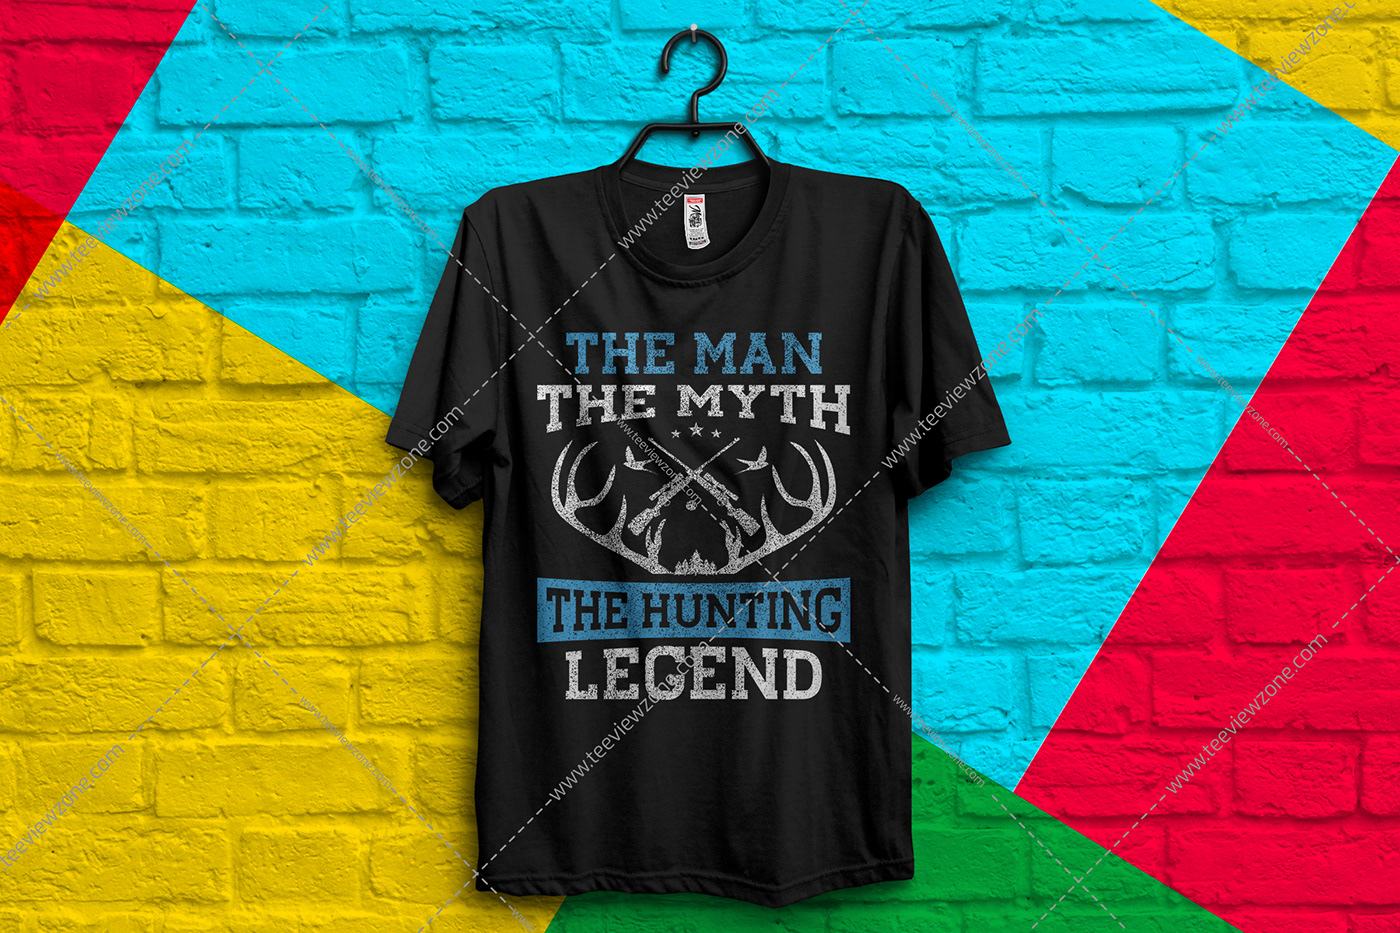 hunting t shirt design
hunting t shirt designs
hunting shirts
hunting vector
funny hunting shirts
hu